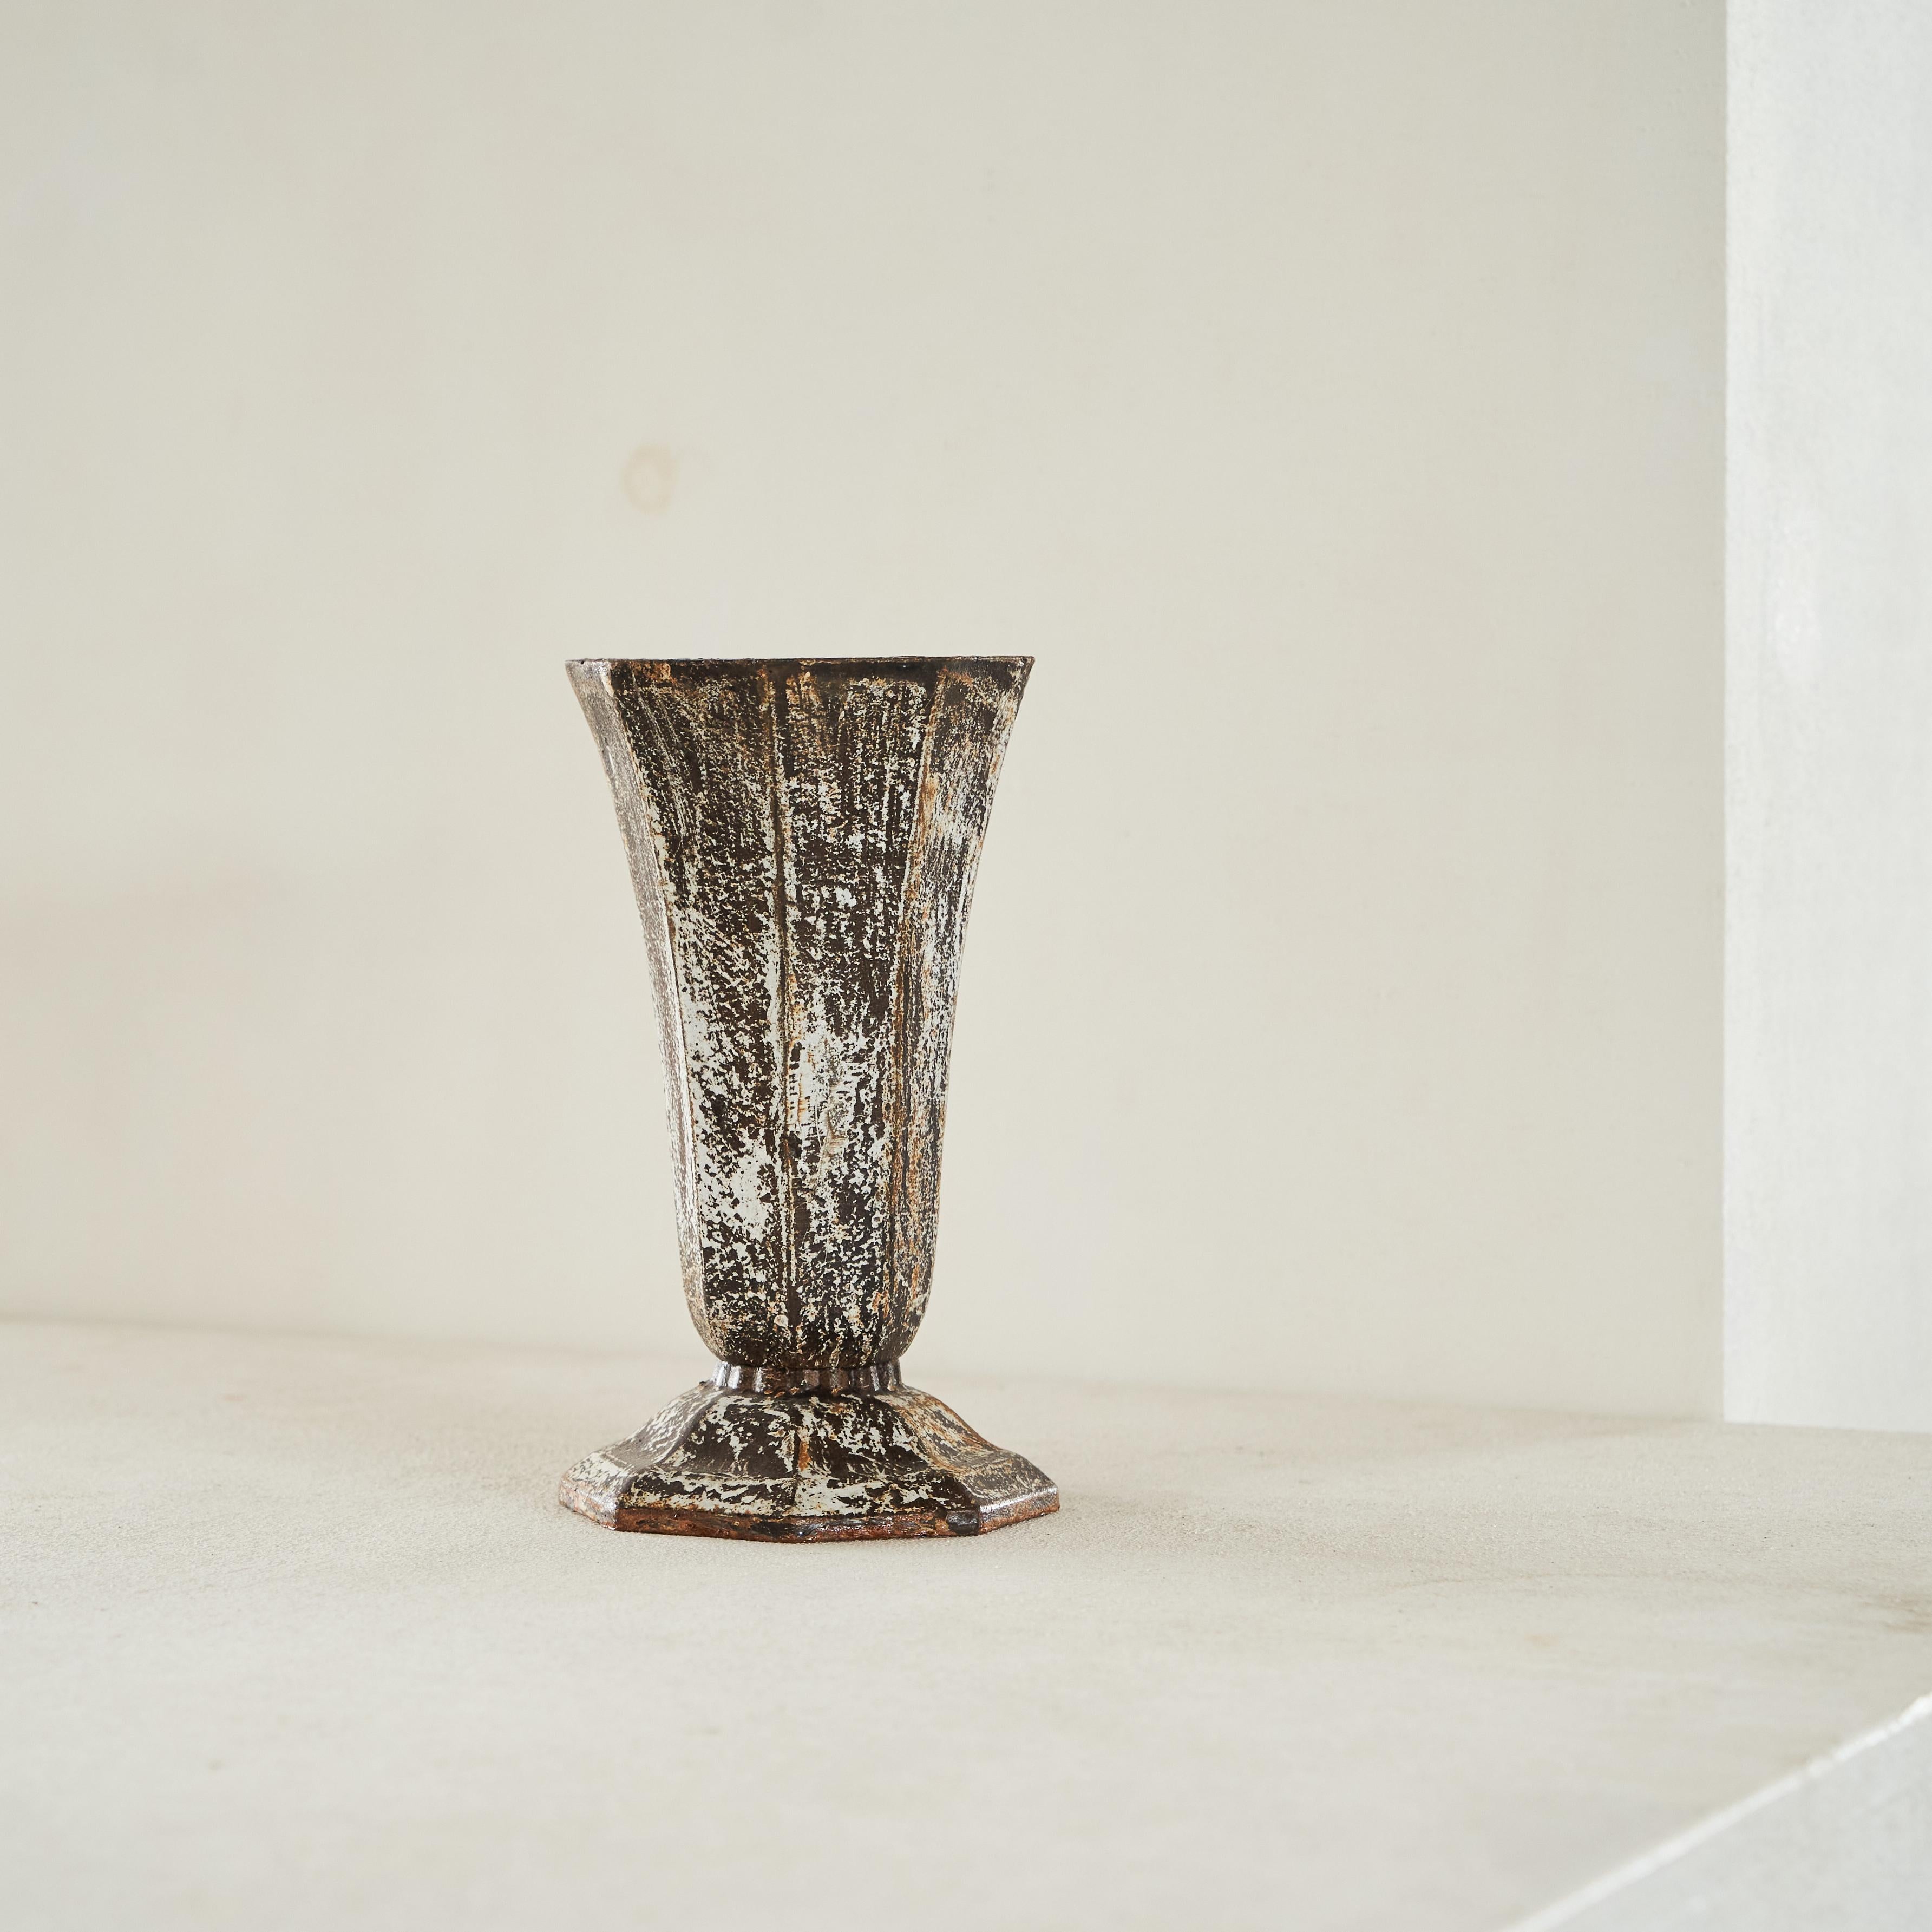 Vase Art déco en métal patiné et rouillé, Europe, années 1930.

Voici un magnifique vase art déco en fonte, richement patiné. Magnifiquement altéré et patiné par le temps - une véritable pièce wabi sabi. Superbe seul, mais aussi avec des fleurs ou